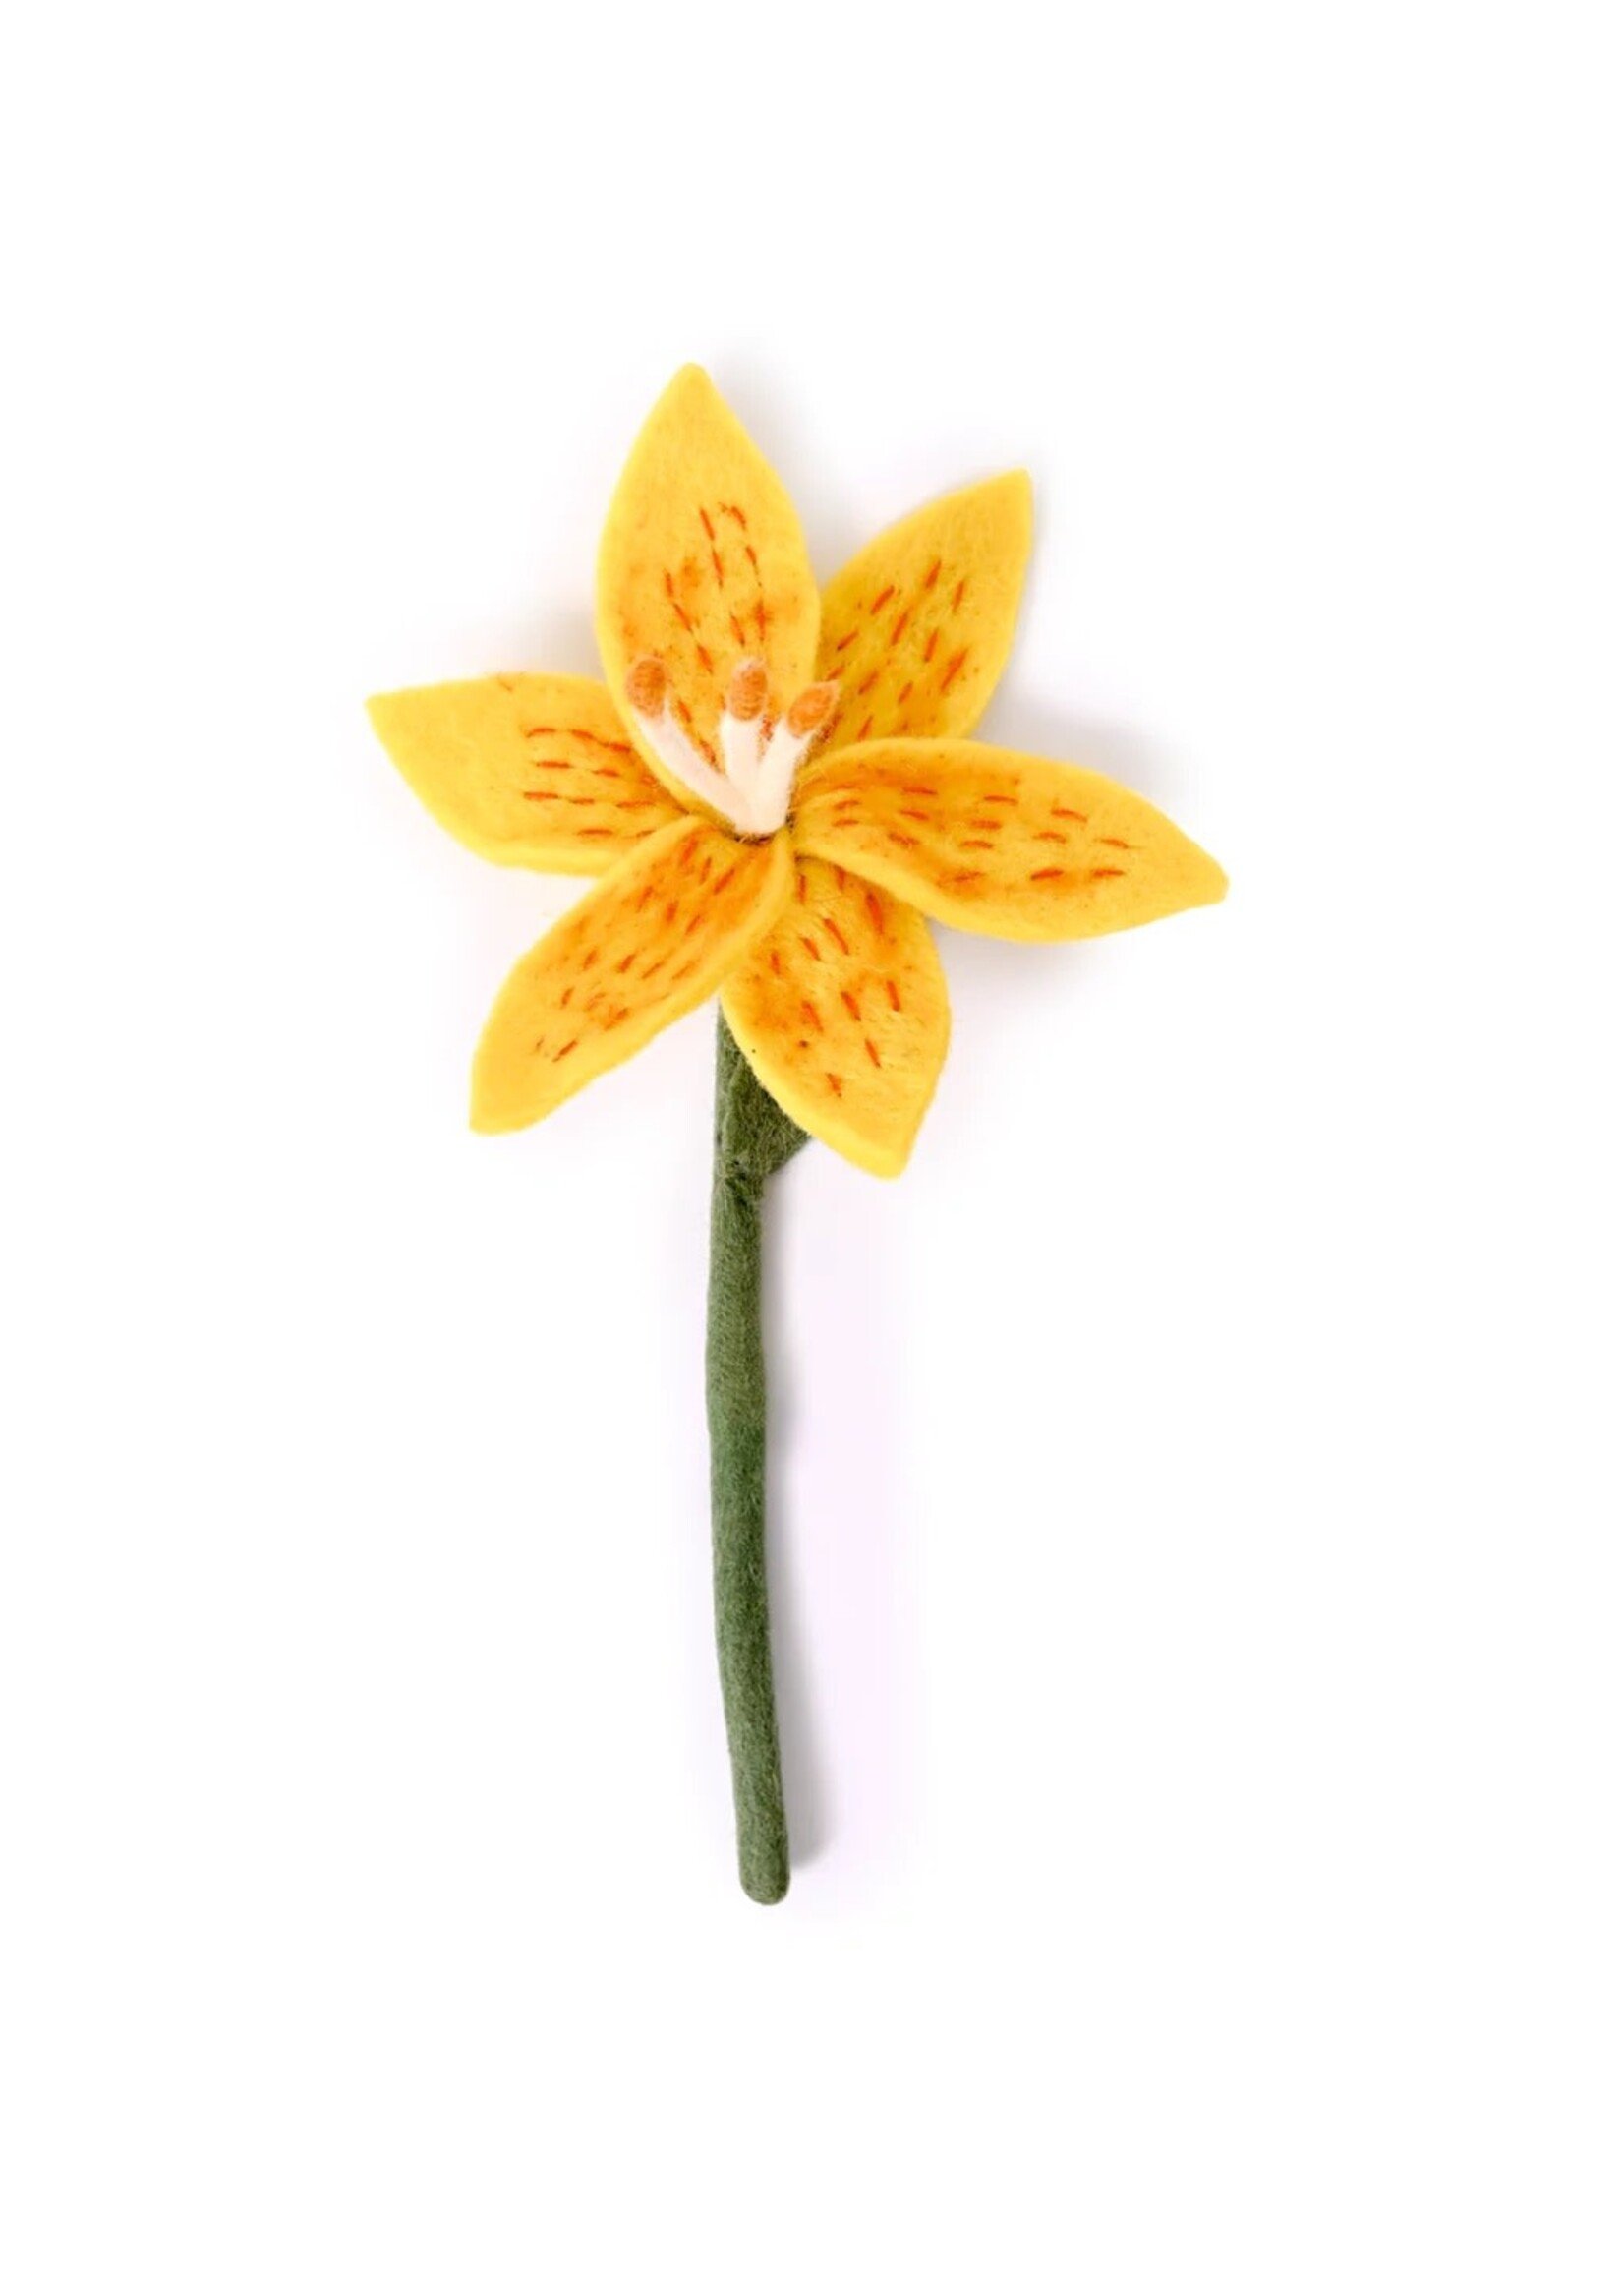 Felt Flower - Stargazer Lily